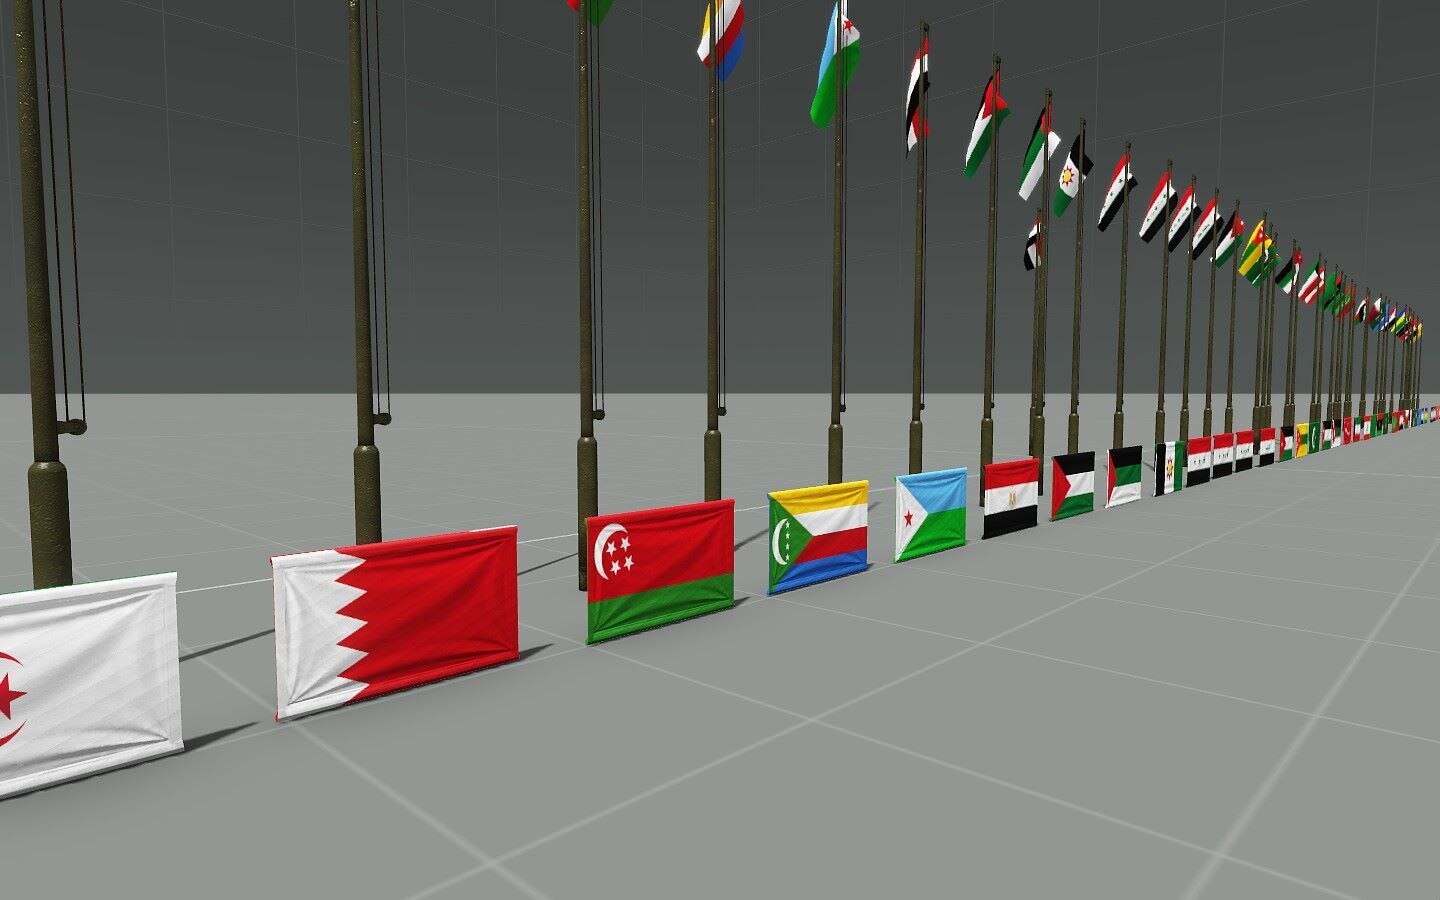 Steam Workshop::Bahrain Race Setup